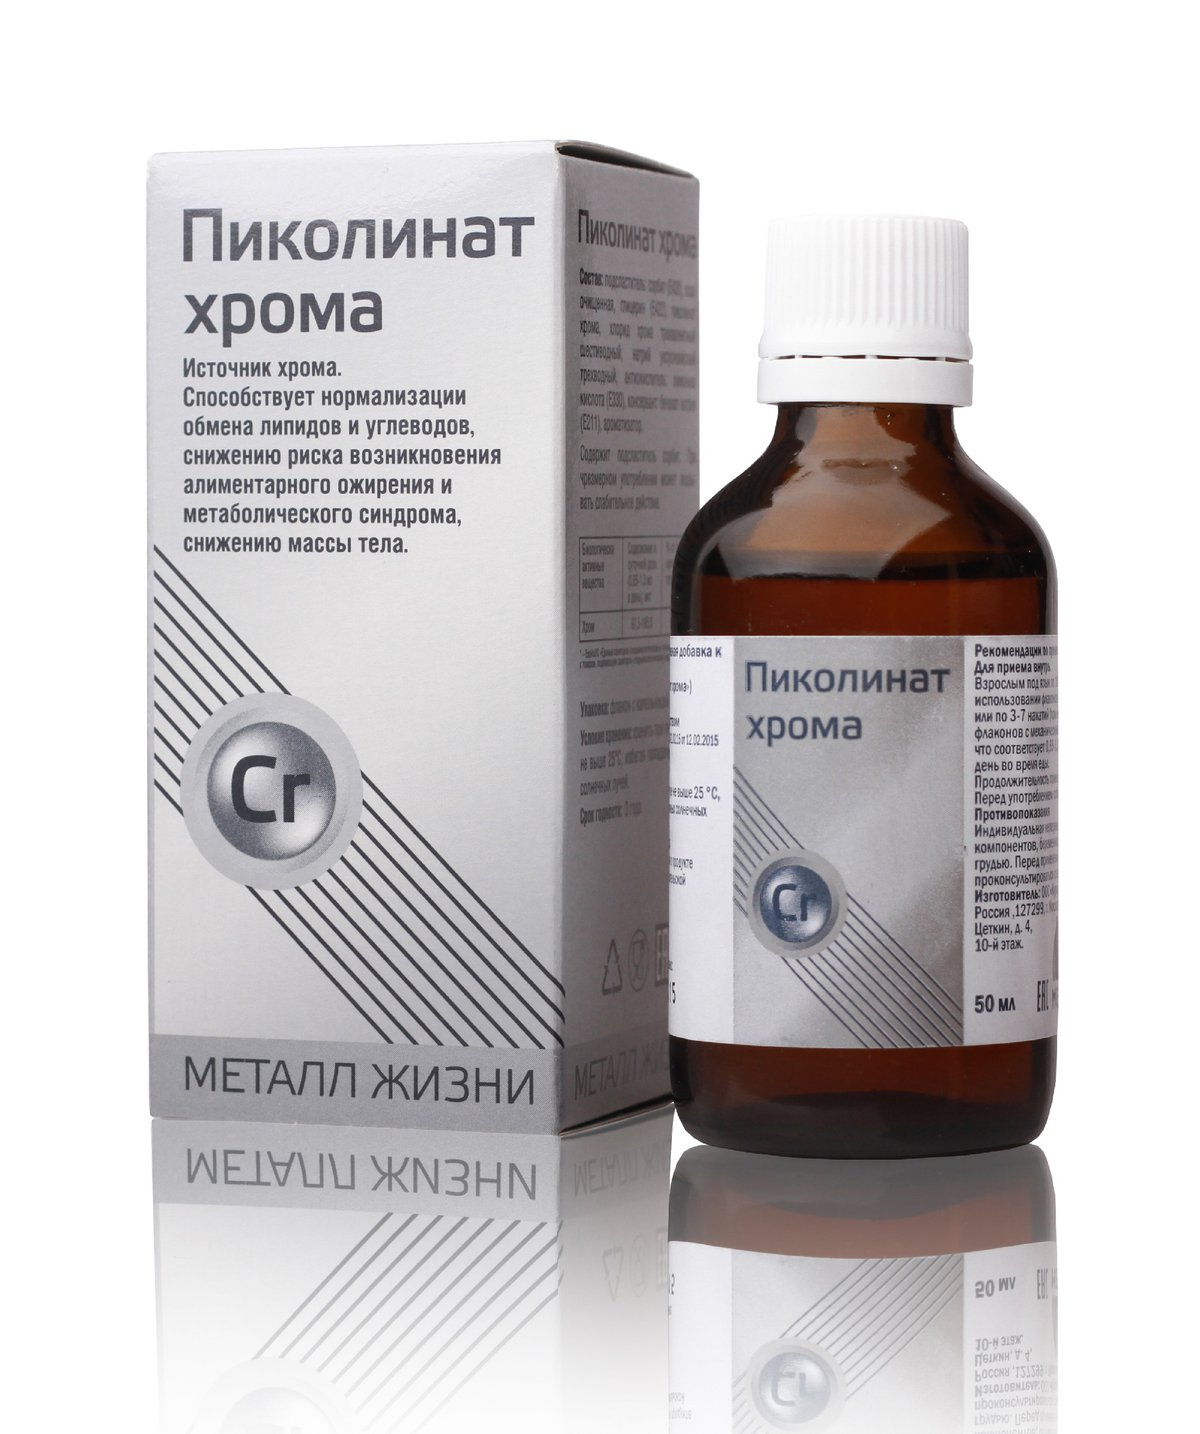 Хром для похудения: препараты и продукты, в которых содержится | medisra.ru